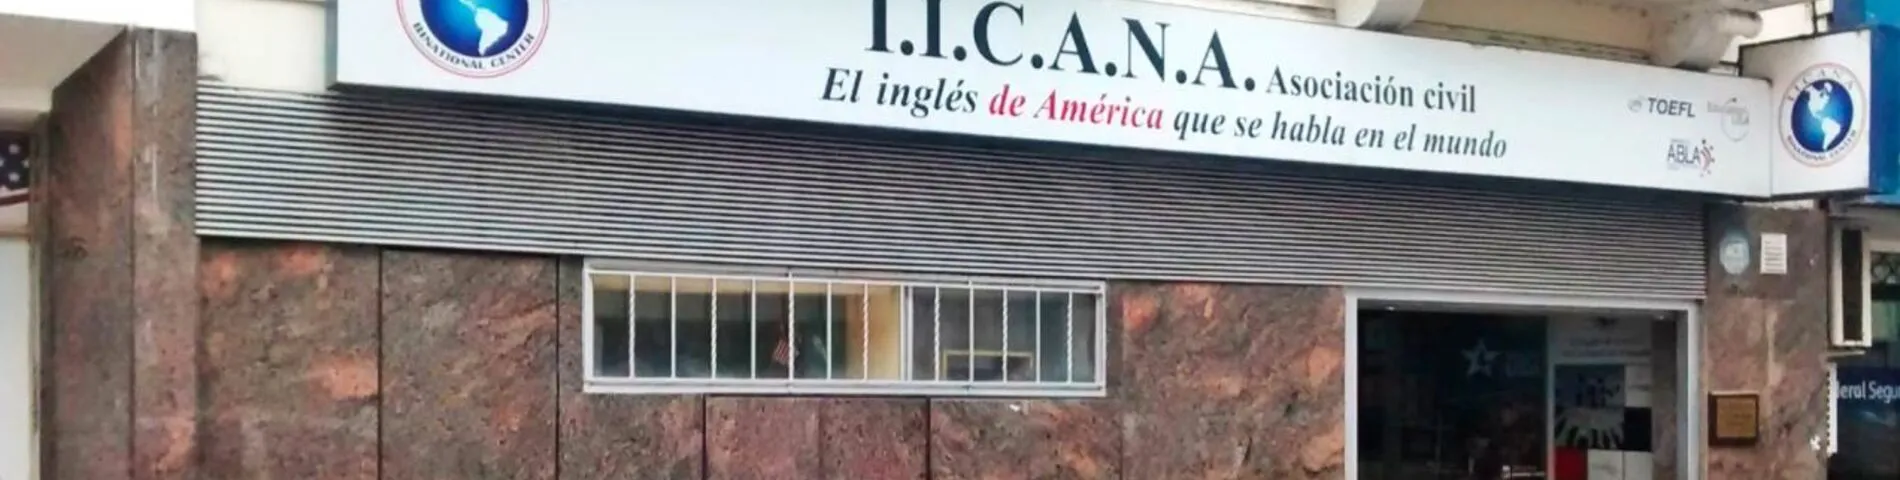 IICANA - Instituto de Intercambio Cultural Argentino Norteamericano图片1